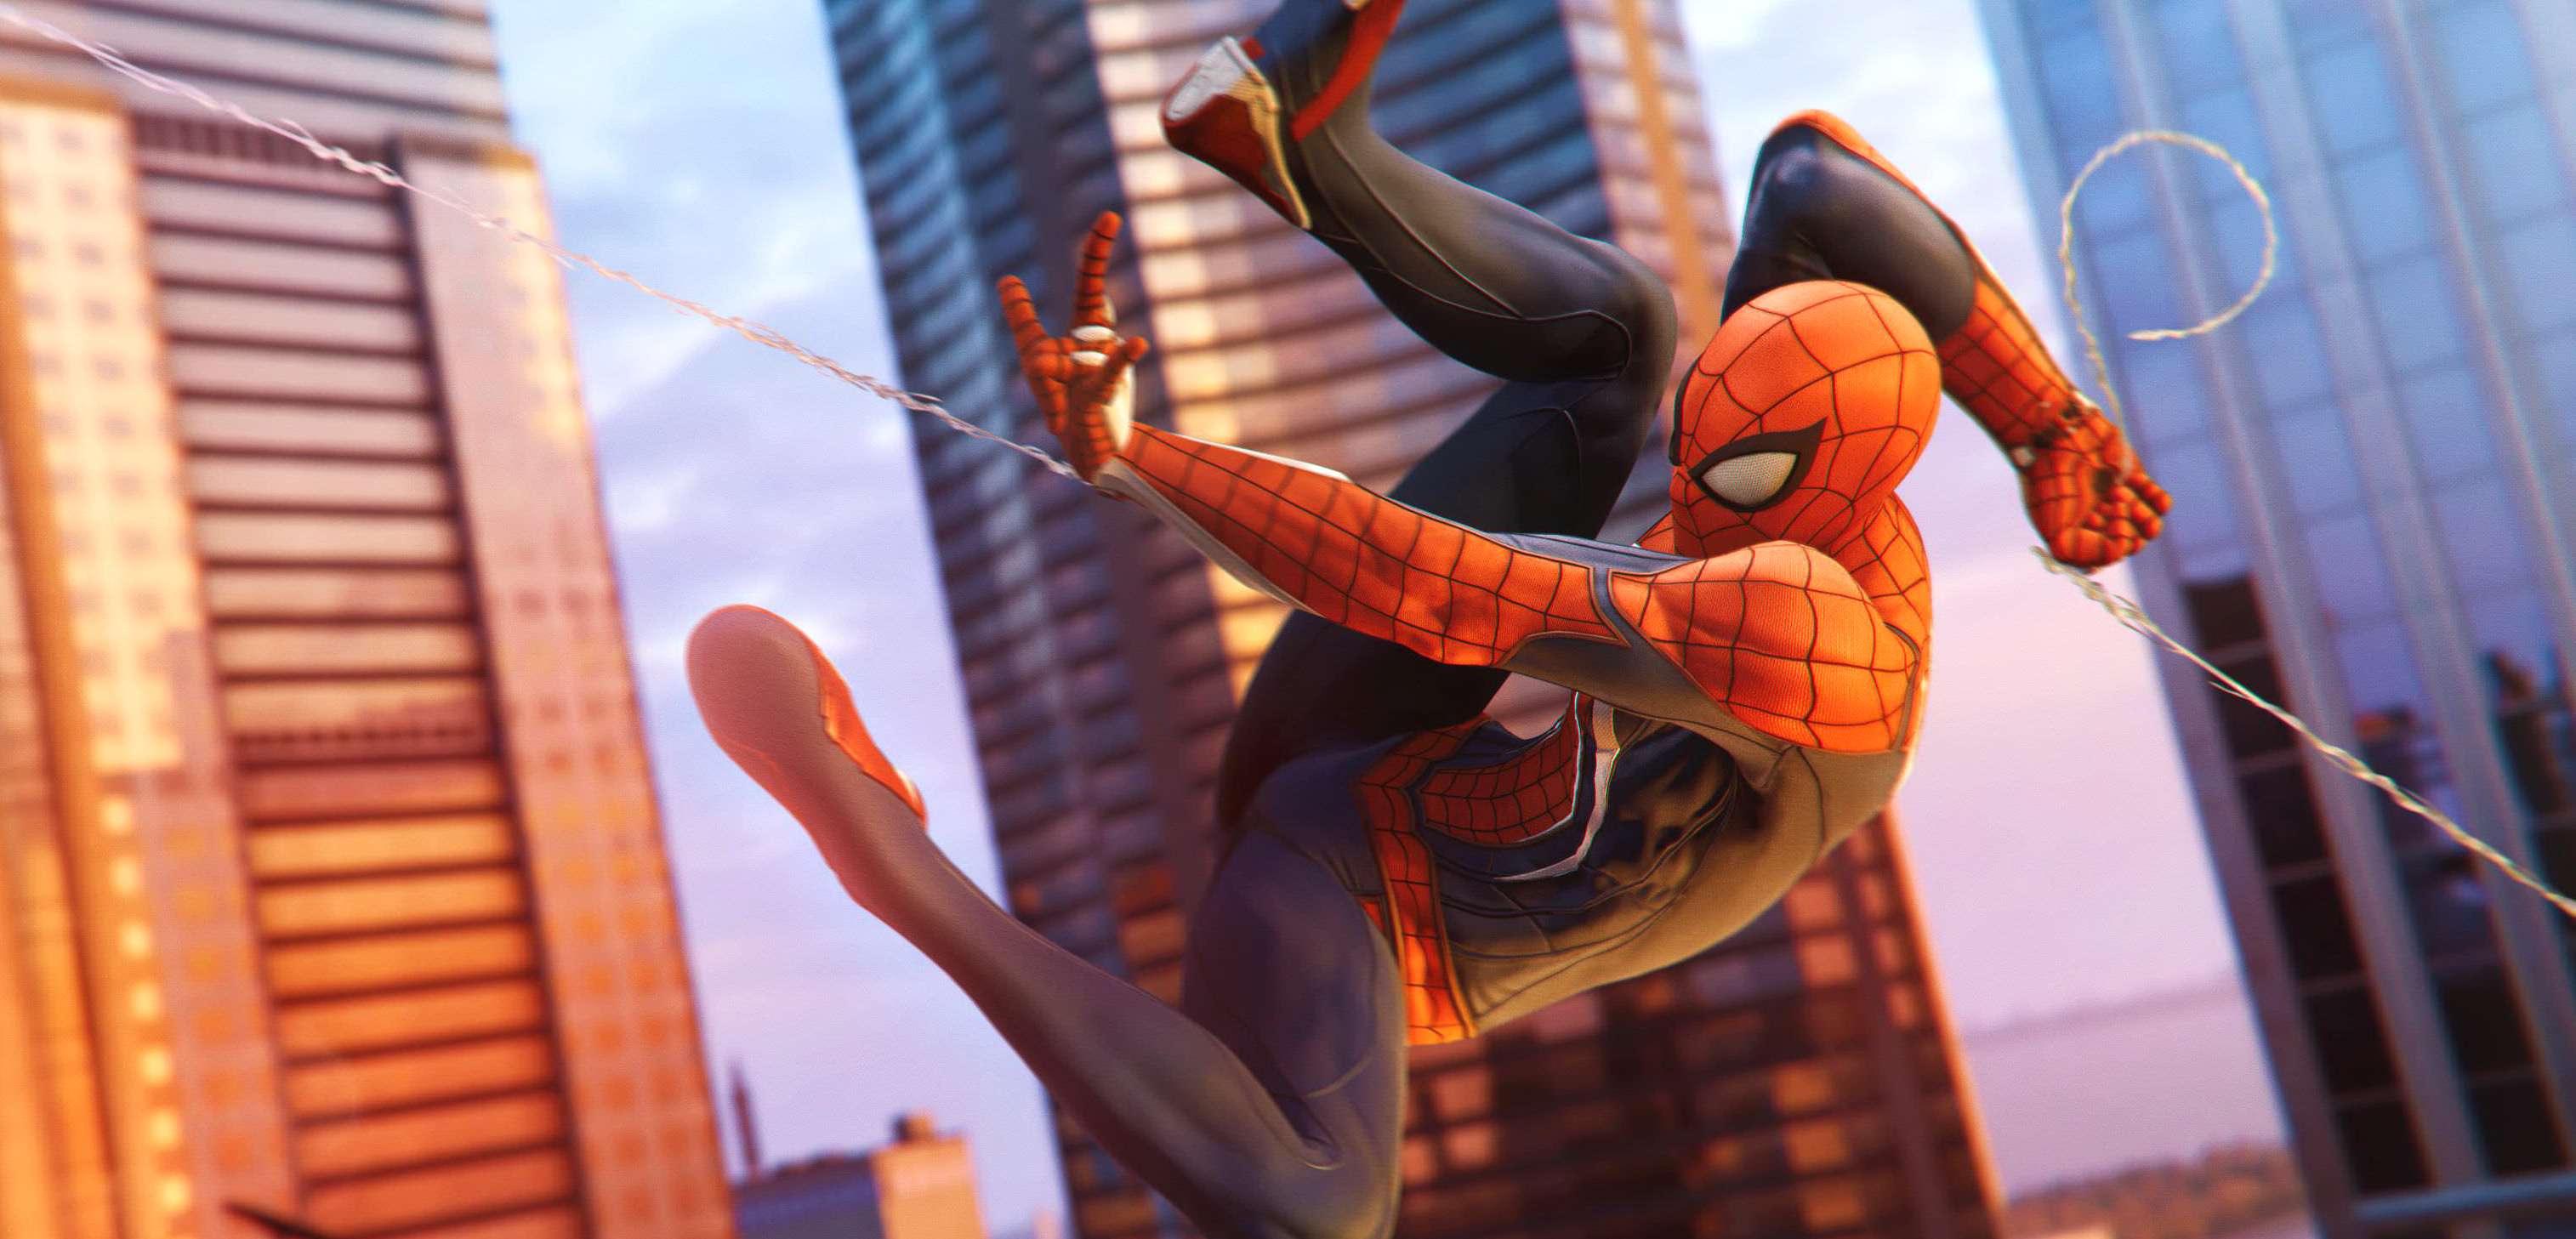 Spider-Man pokazuje gadżety i zdolności bojowe. Nowy zwiastun